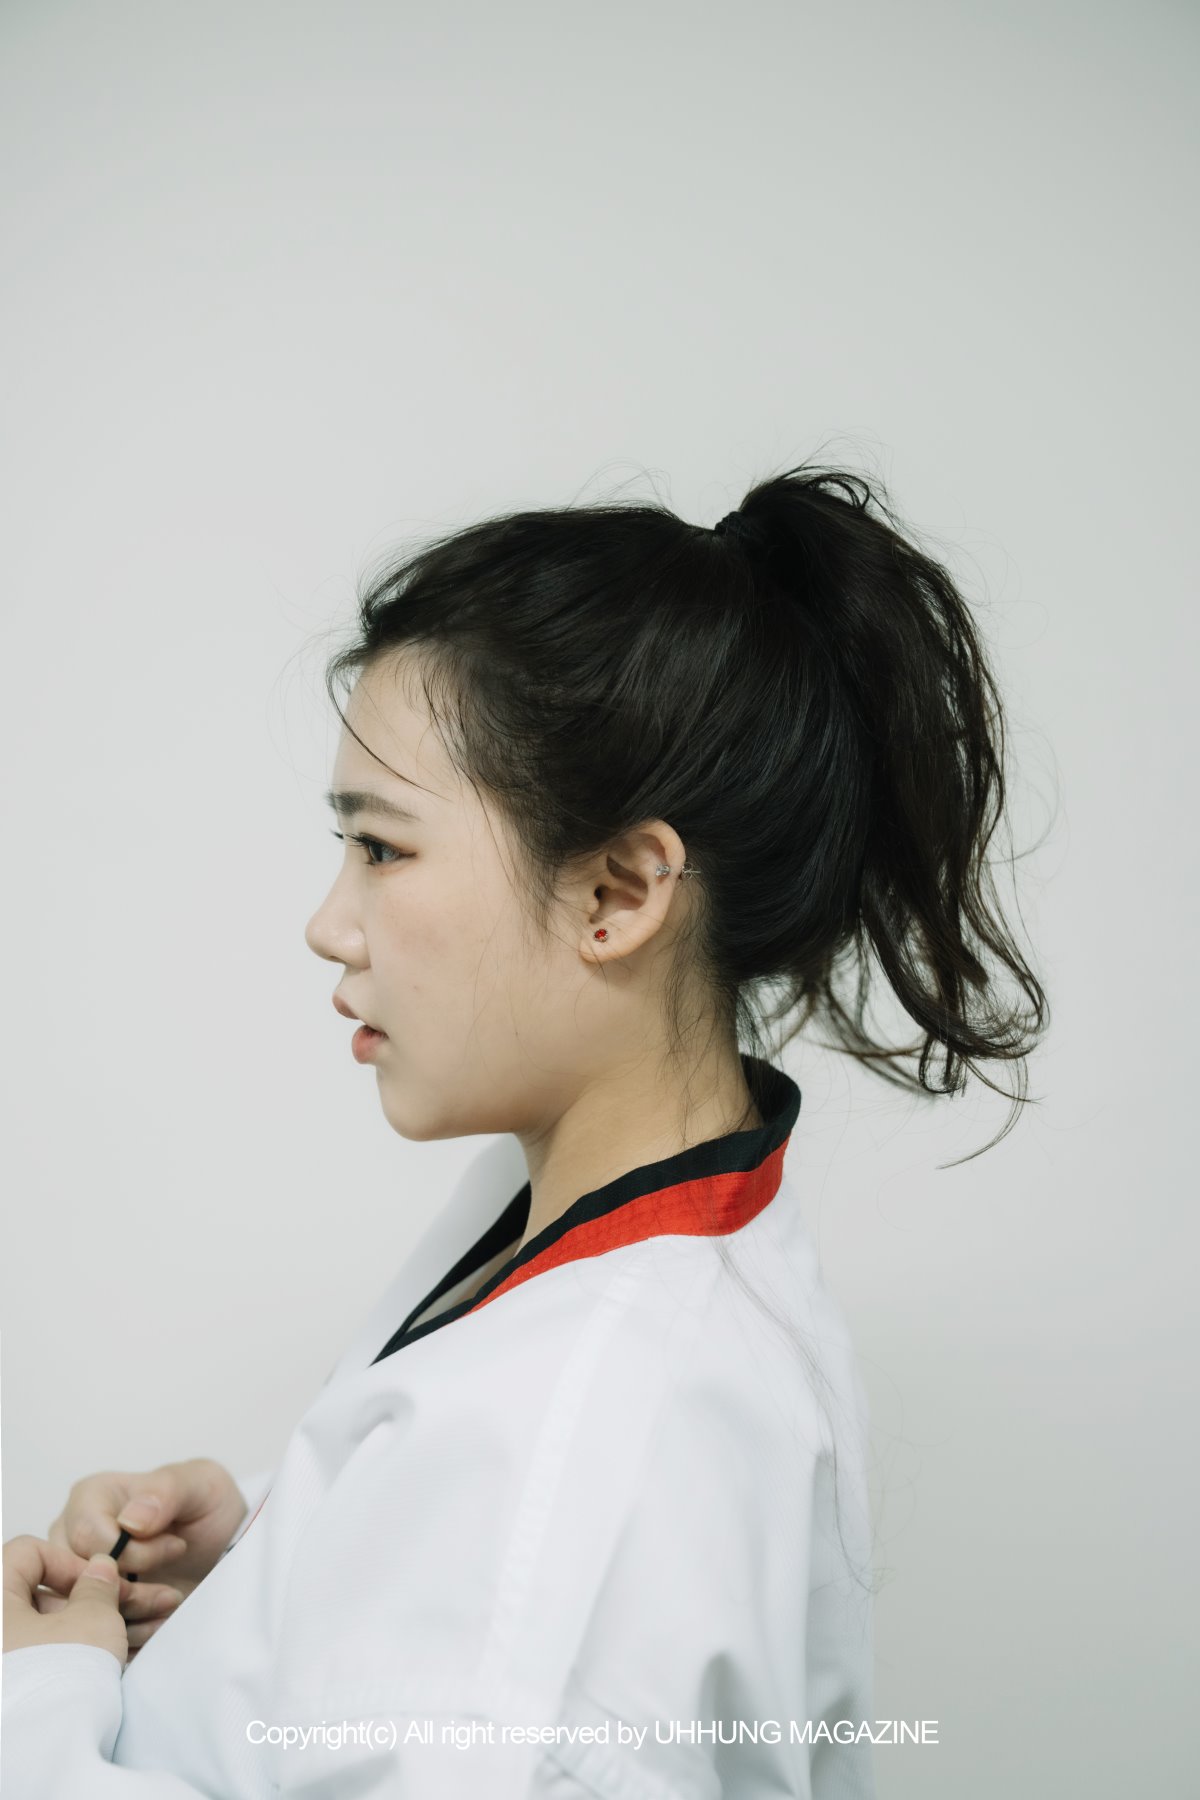 UHHUNG MAGAZINE Jenn Vol 1 Taekwondo Part1 0025 1943881325.jpg